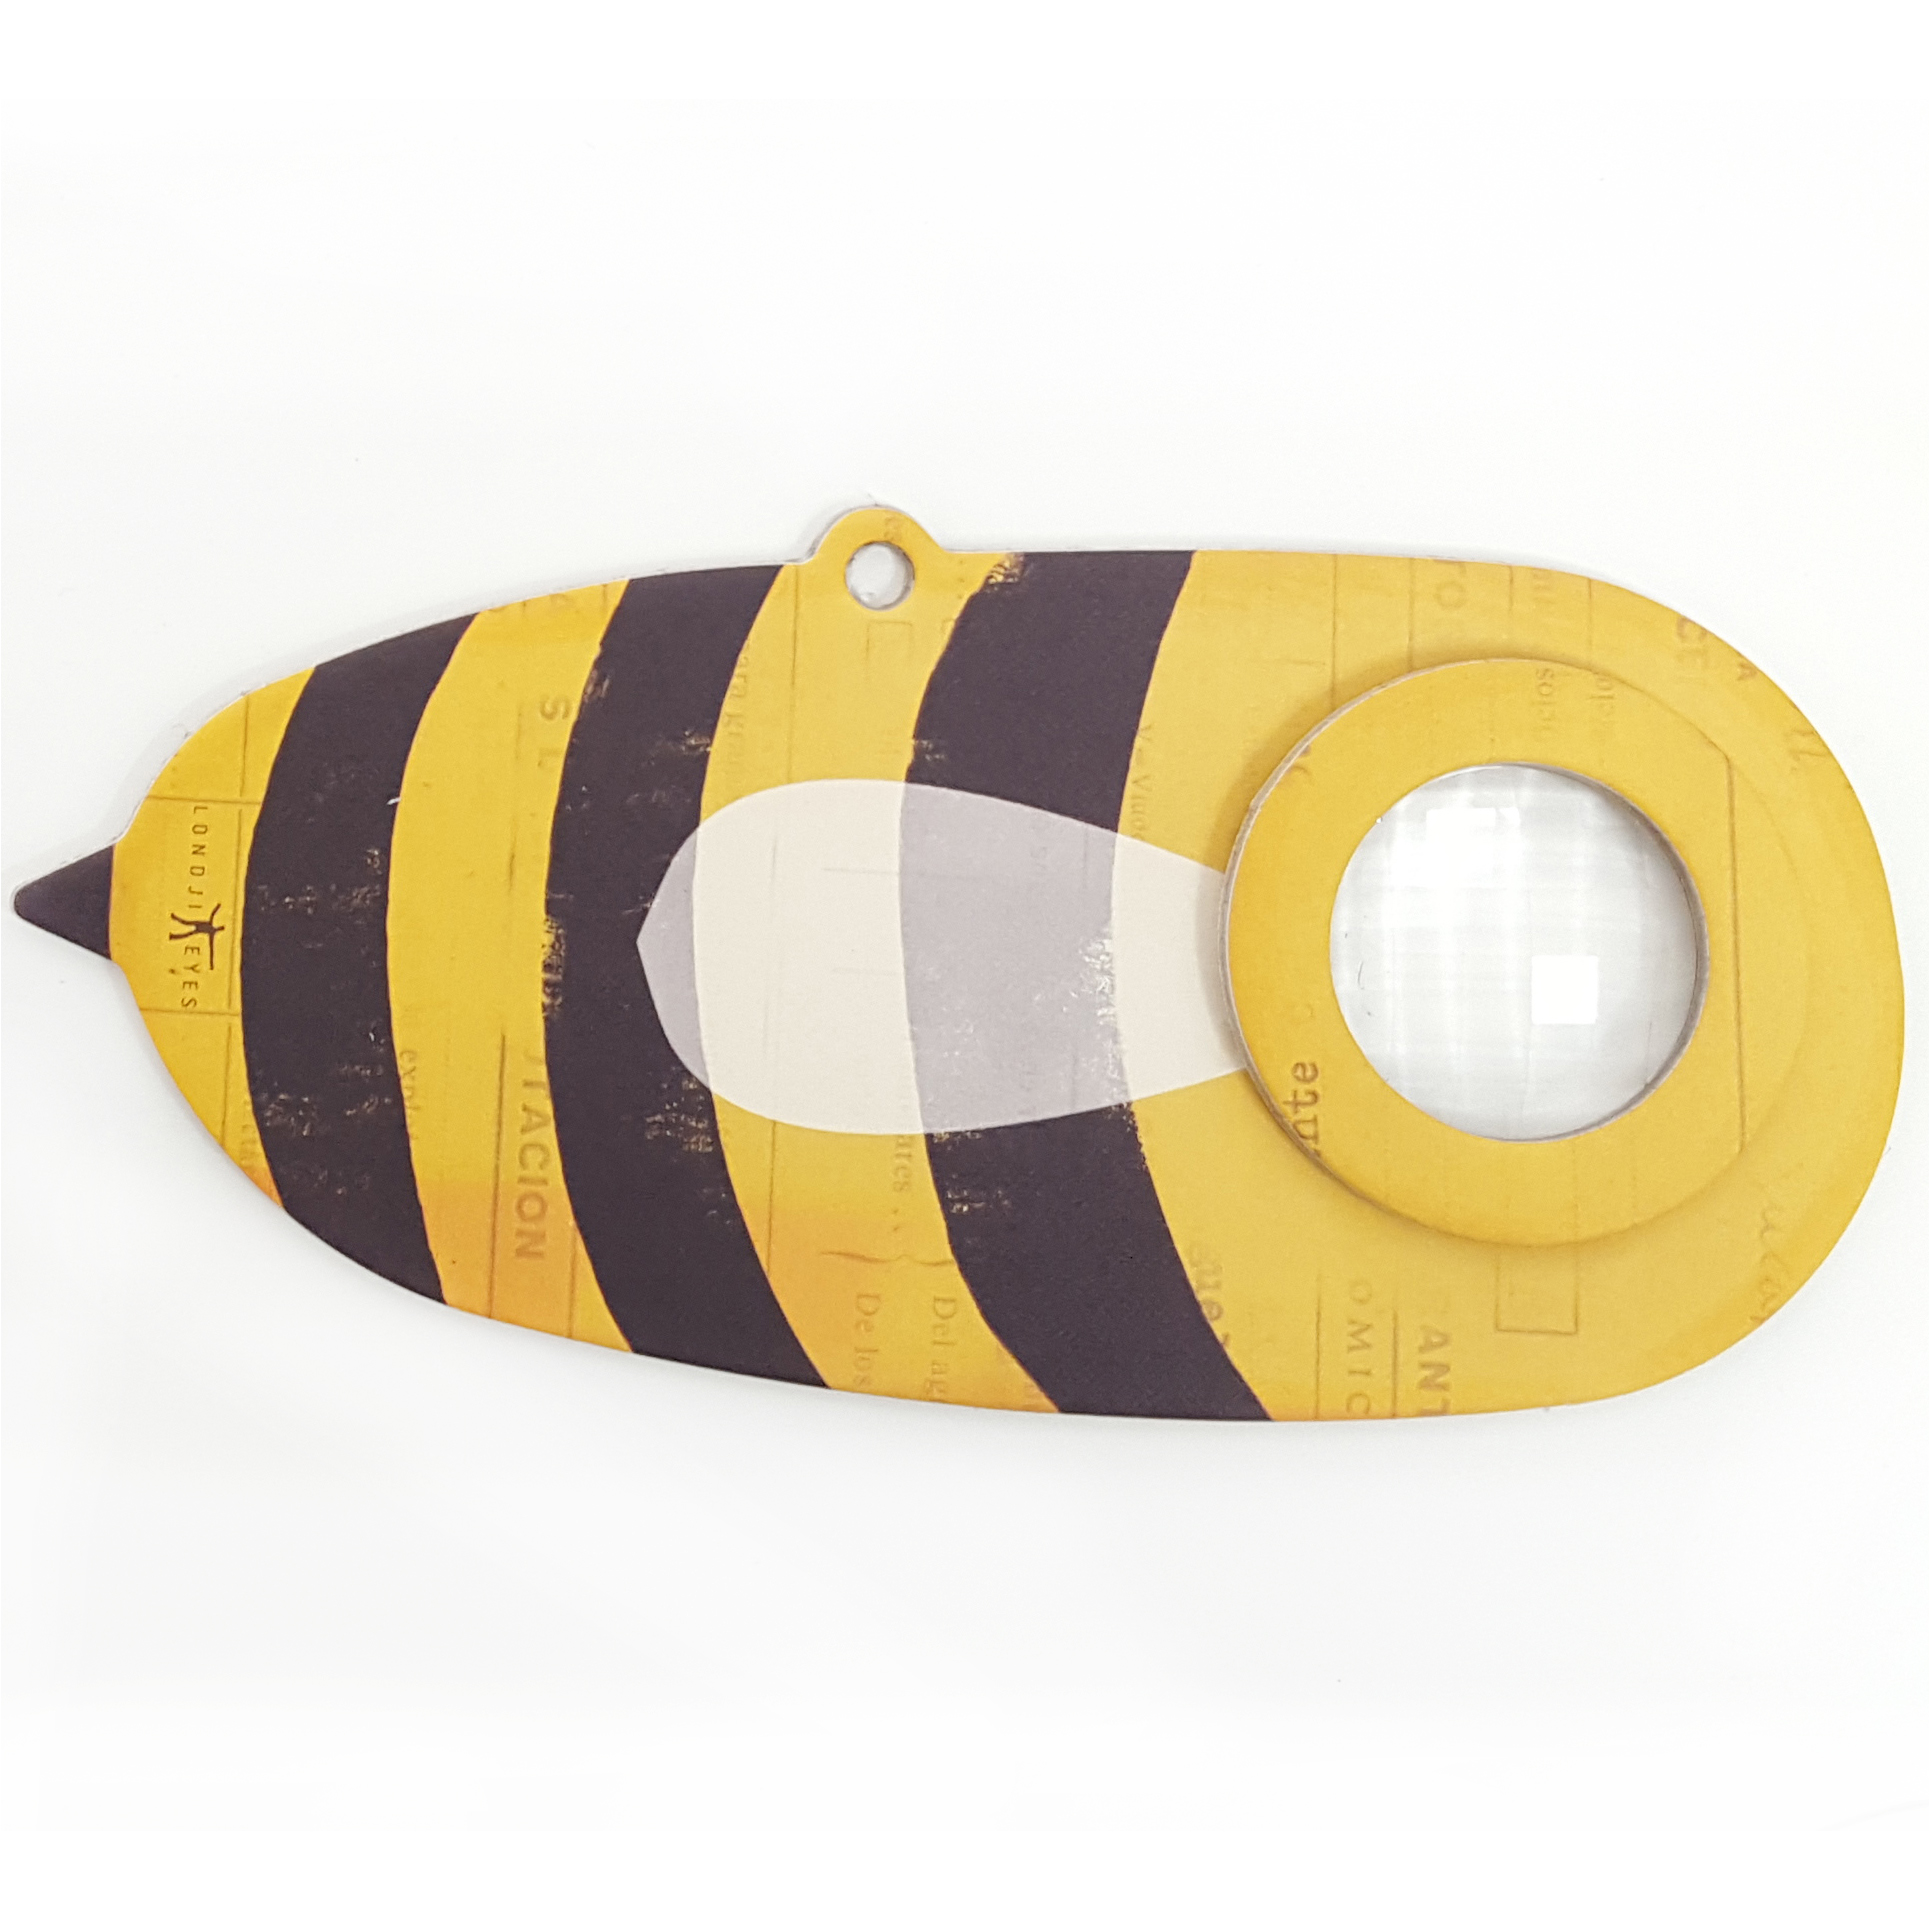 Caleidoscop - Insect Eye Bee | Londji image1